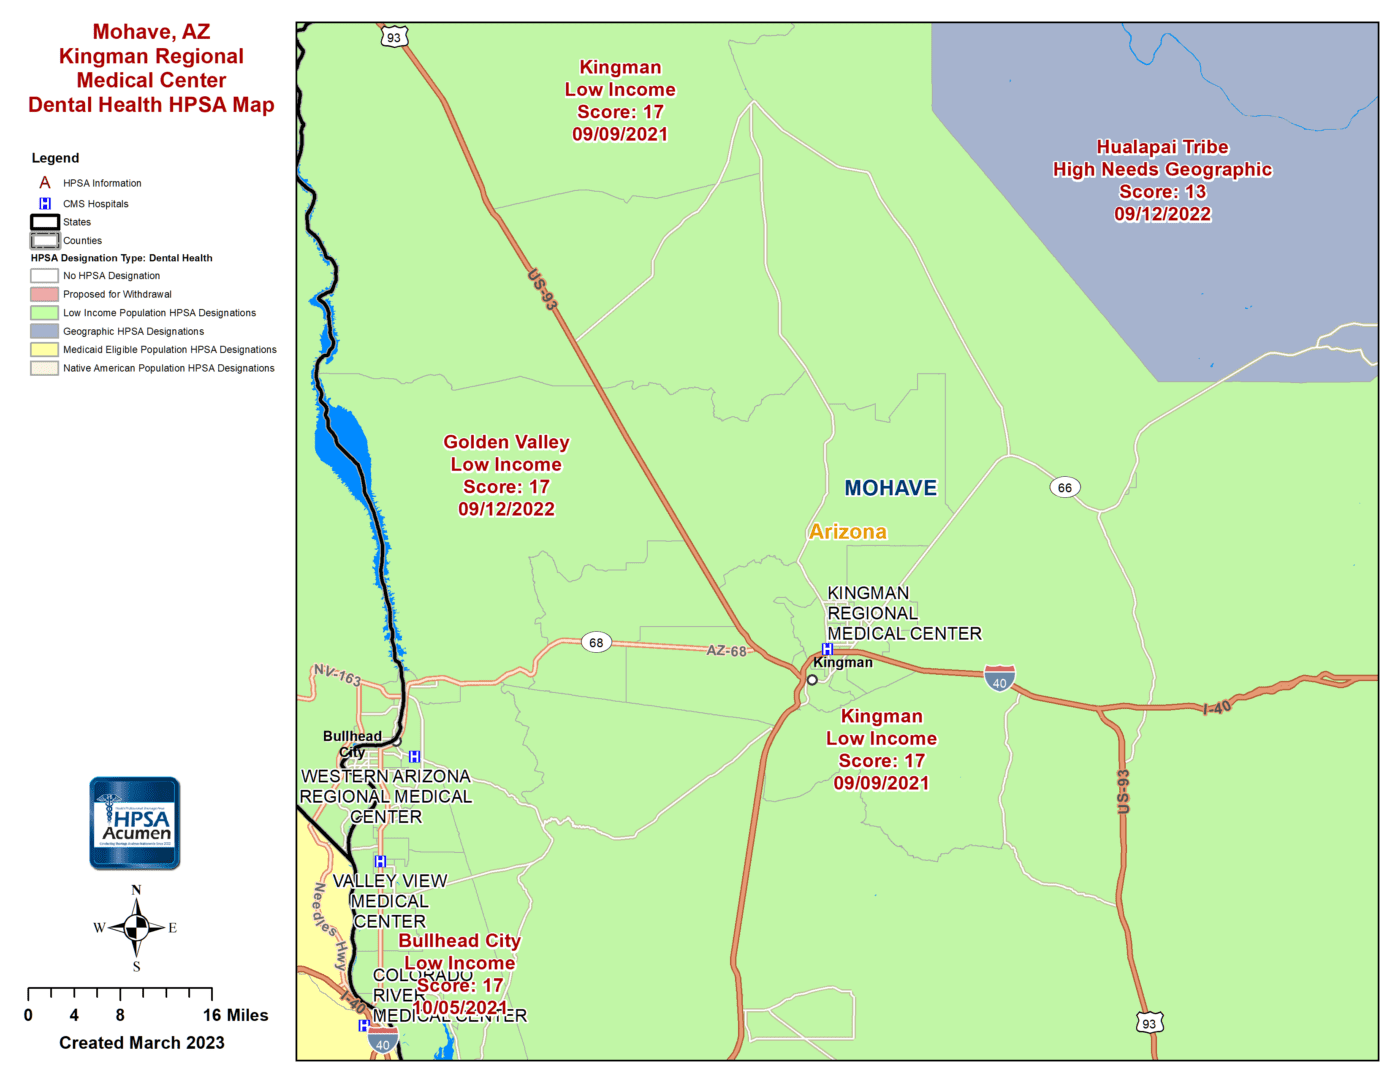 Mohave, AZ DH HPSA Map